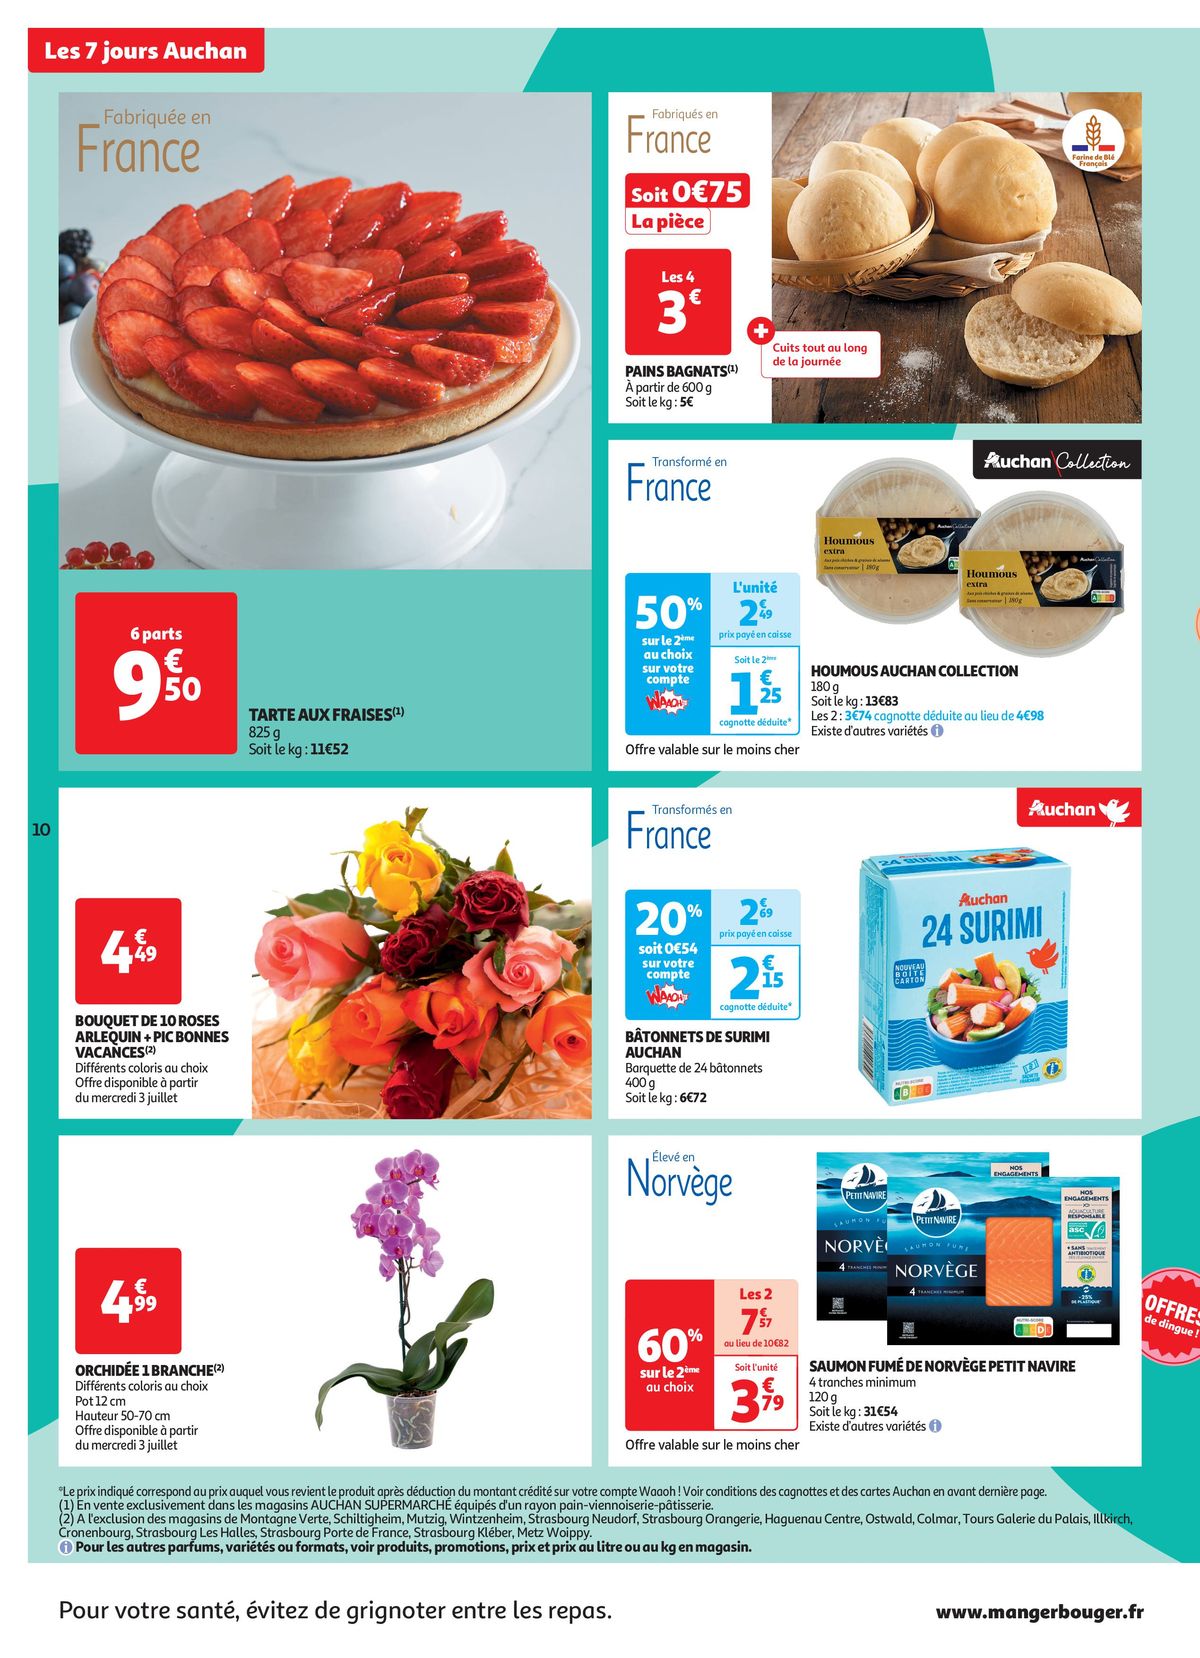 Catalogue C'est les 7 jours Auchan dans votre super !, page 00010